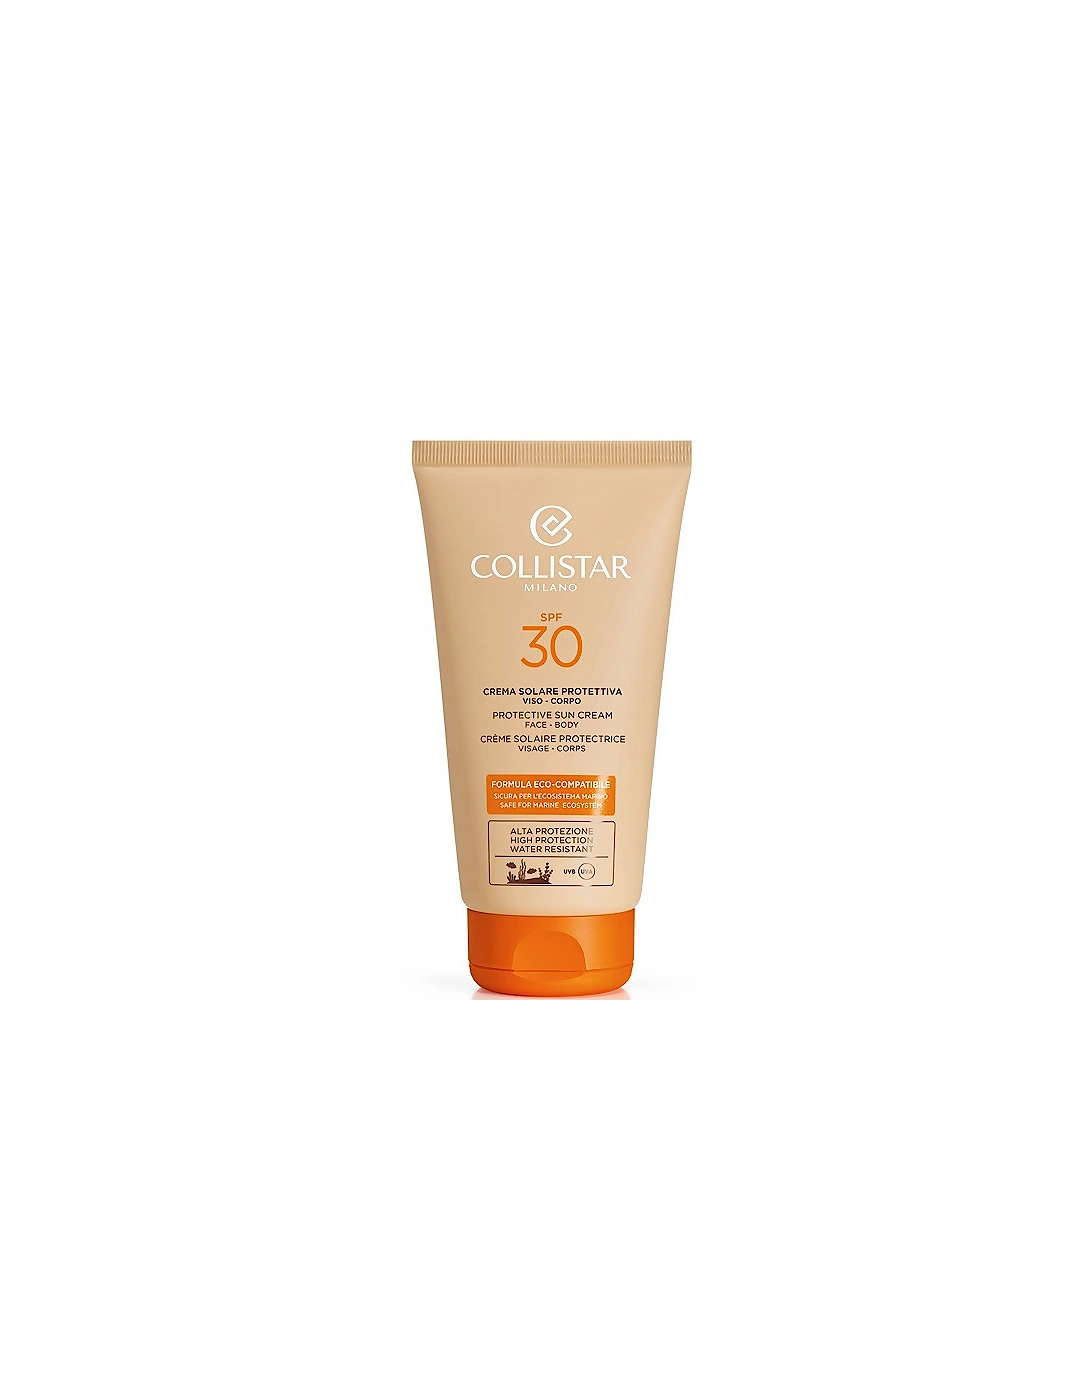 Protective Sun Cream Face-Body SPF 30+ 150ml, 2 of 1